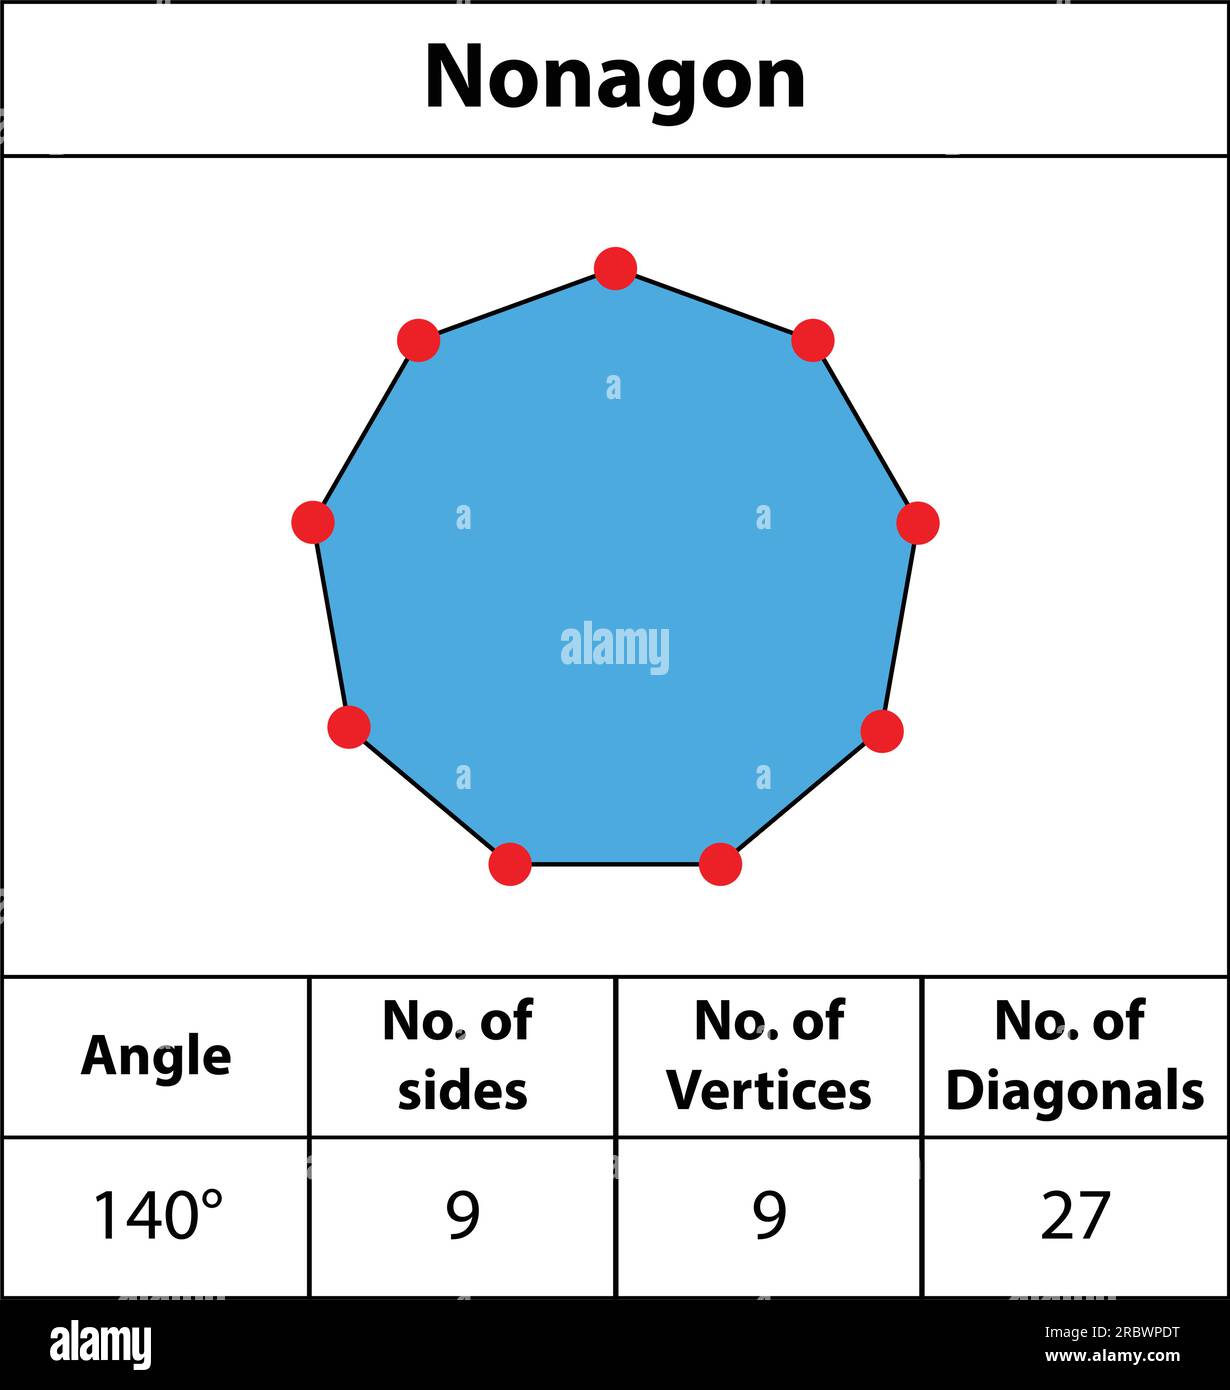 Nonagon. Formen von Winkeln, Eckpunkten, Seiten, Diagonalen. Mit Farben, Feldern für rote Punkte, Kanten, Mathematikbildern. Symbol für nicht-winklige Form - Vektorsymbol. Stock Vektor